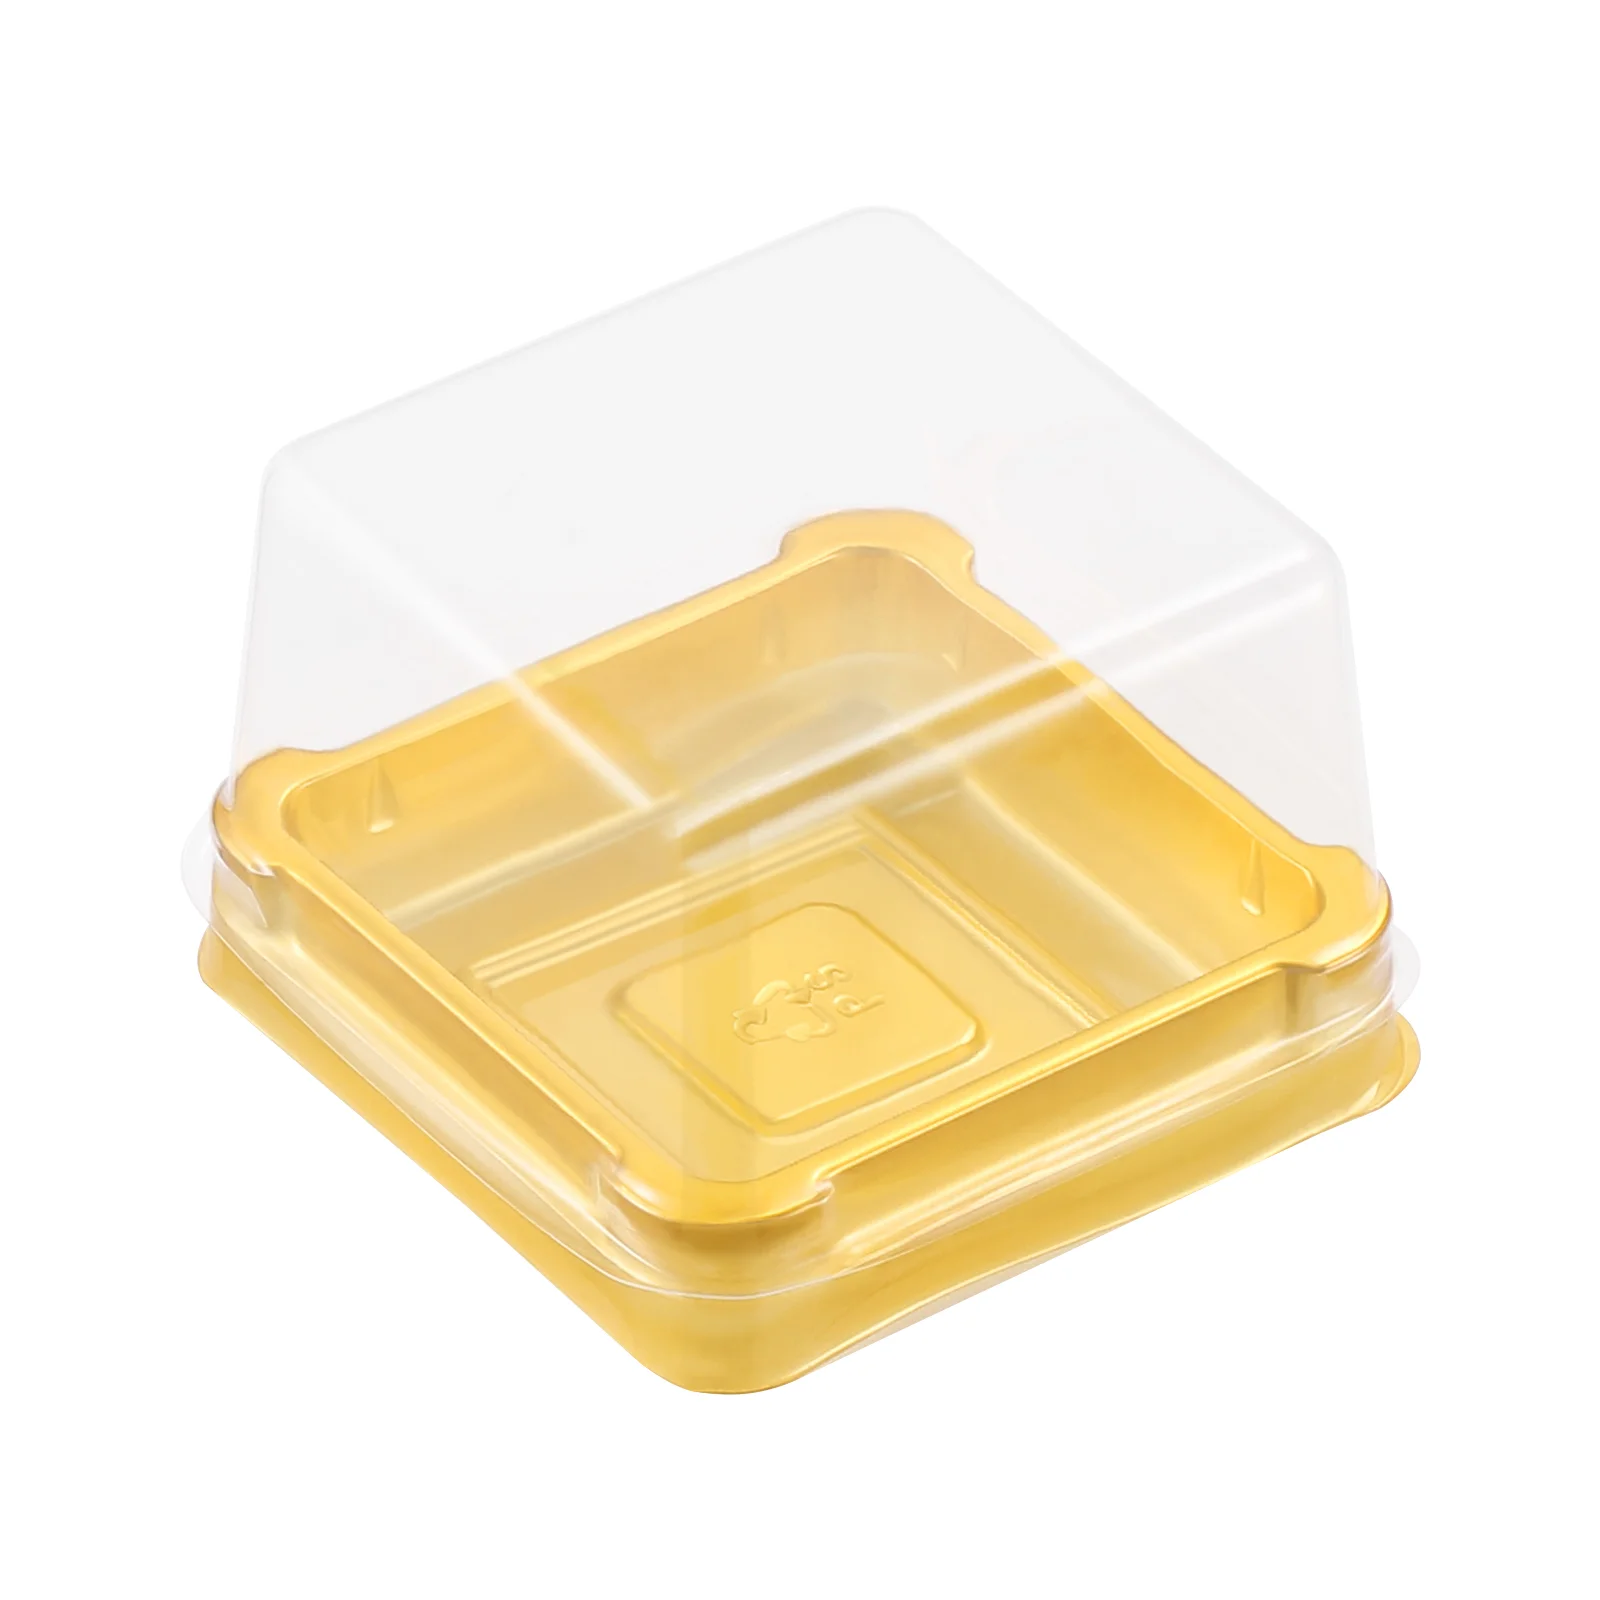 

UPKOCH 50 шт. пластиковых квадратных коробок для торта в виде Луны, контейнер для яичного желтка, Золотая упаковочная коробка (маленькая)